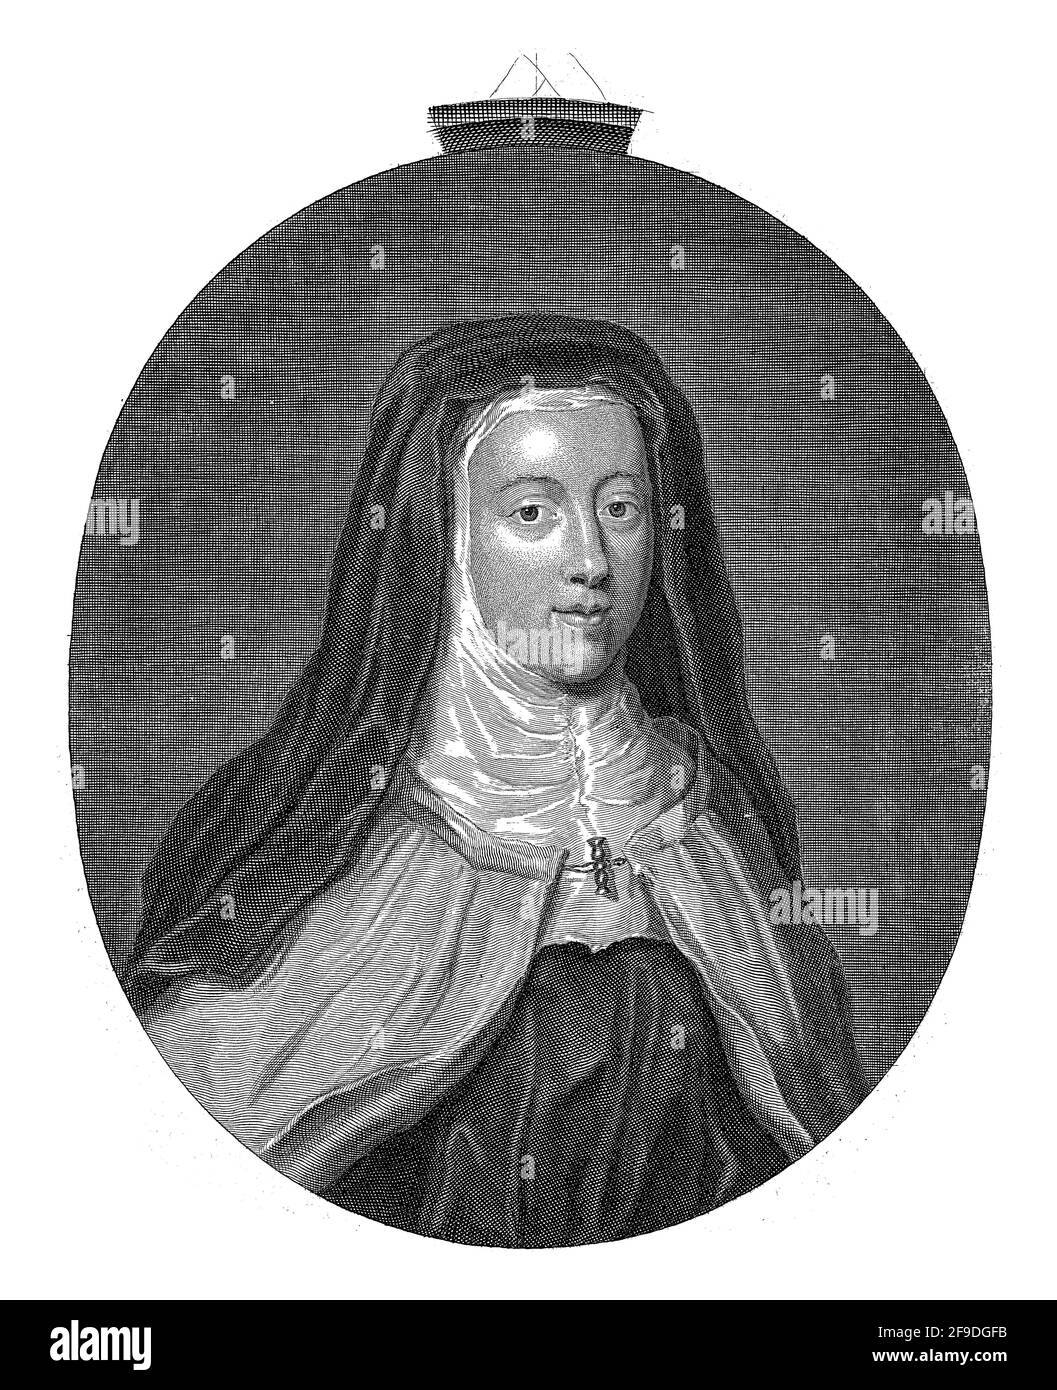 Ritratto in cornice ovale di Louise Francoise de la Baume le Blanc de la Valliere, dopo che si unì all'Ordine dei Carmelitani e adottò il nome Louise d Foto Stock